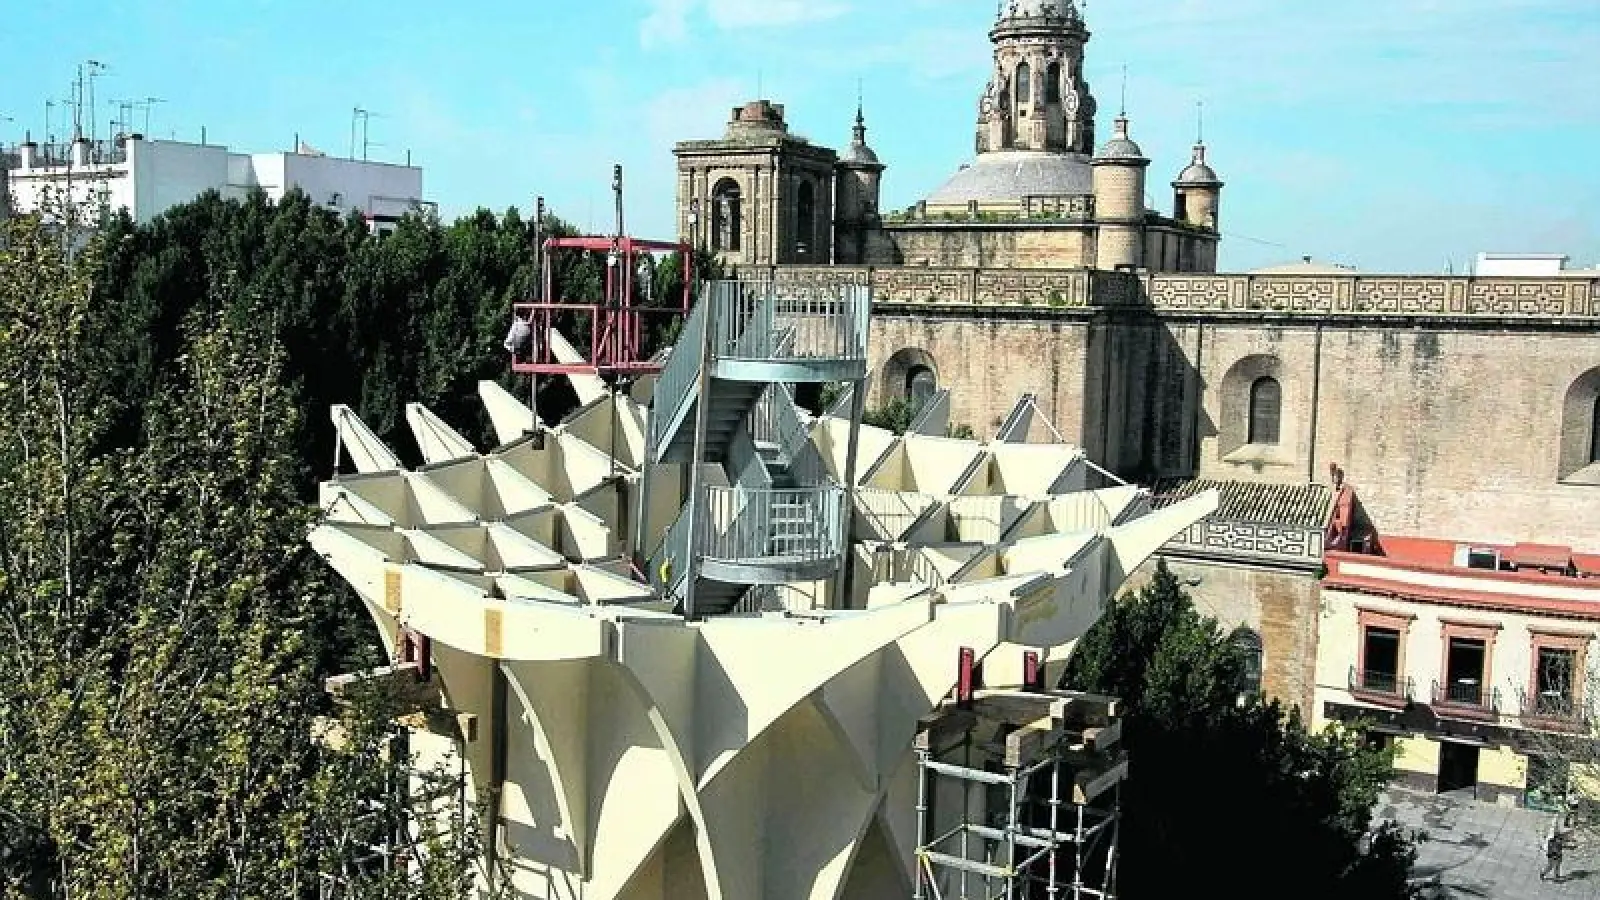 &lt;p&gt;  &lt;x_bildunterschr&gt;  &lt;b&gt;28 Meter &lt;/b&gt; erheben sich die elegant verwobenen Säulen in den Himmel, sind fast so hoch wie die alte Kathedrale der einstmals maurischen Stadt Sevilla. Die Säulen werden demnächst als Träger für eine gigantische Dachkonstruktion dienen, die in ihrer Wabenstruktur so manchen Betrachter an einen Bienenstock erinnern wird, in ihrer filigranen Ästhetik jedoch auch an die Bühnenbildgestalter von Raumschiff Enterprise und anderer Science-Fiction-Serien gemahnt. Begehbar soll dieses Dach werden, eine luftige Aussichtsplattform, von der aus man die Gassen der Altstadt inspizieren kann. Unter der lichten und trotz ihrer beeindruckenden Größe sehr luftigen Konstruktion ist Platz zum Flanieren, für Marktreiben oder Konzertbühnen &amp;ndash; das kulturelle Herz der Stadt soll das Metropol Parasol werden.  &lt;tab/&gt;  &lt;tab/&gt;Foto: Finnforest Merk/Grafik: Jürgen Mayer H &lt;/x_bildunterschr&gt;  &lt;/p&gt;